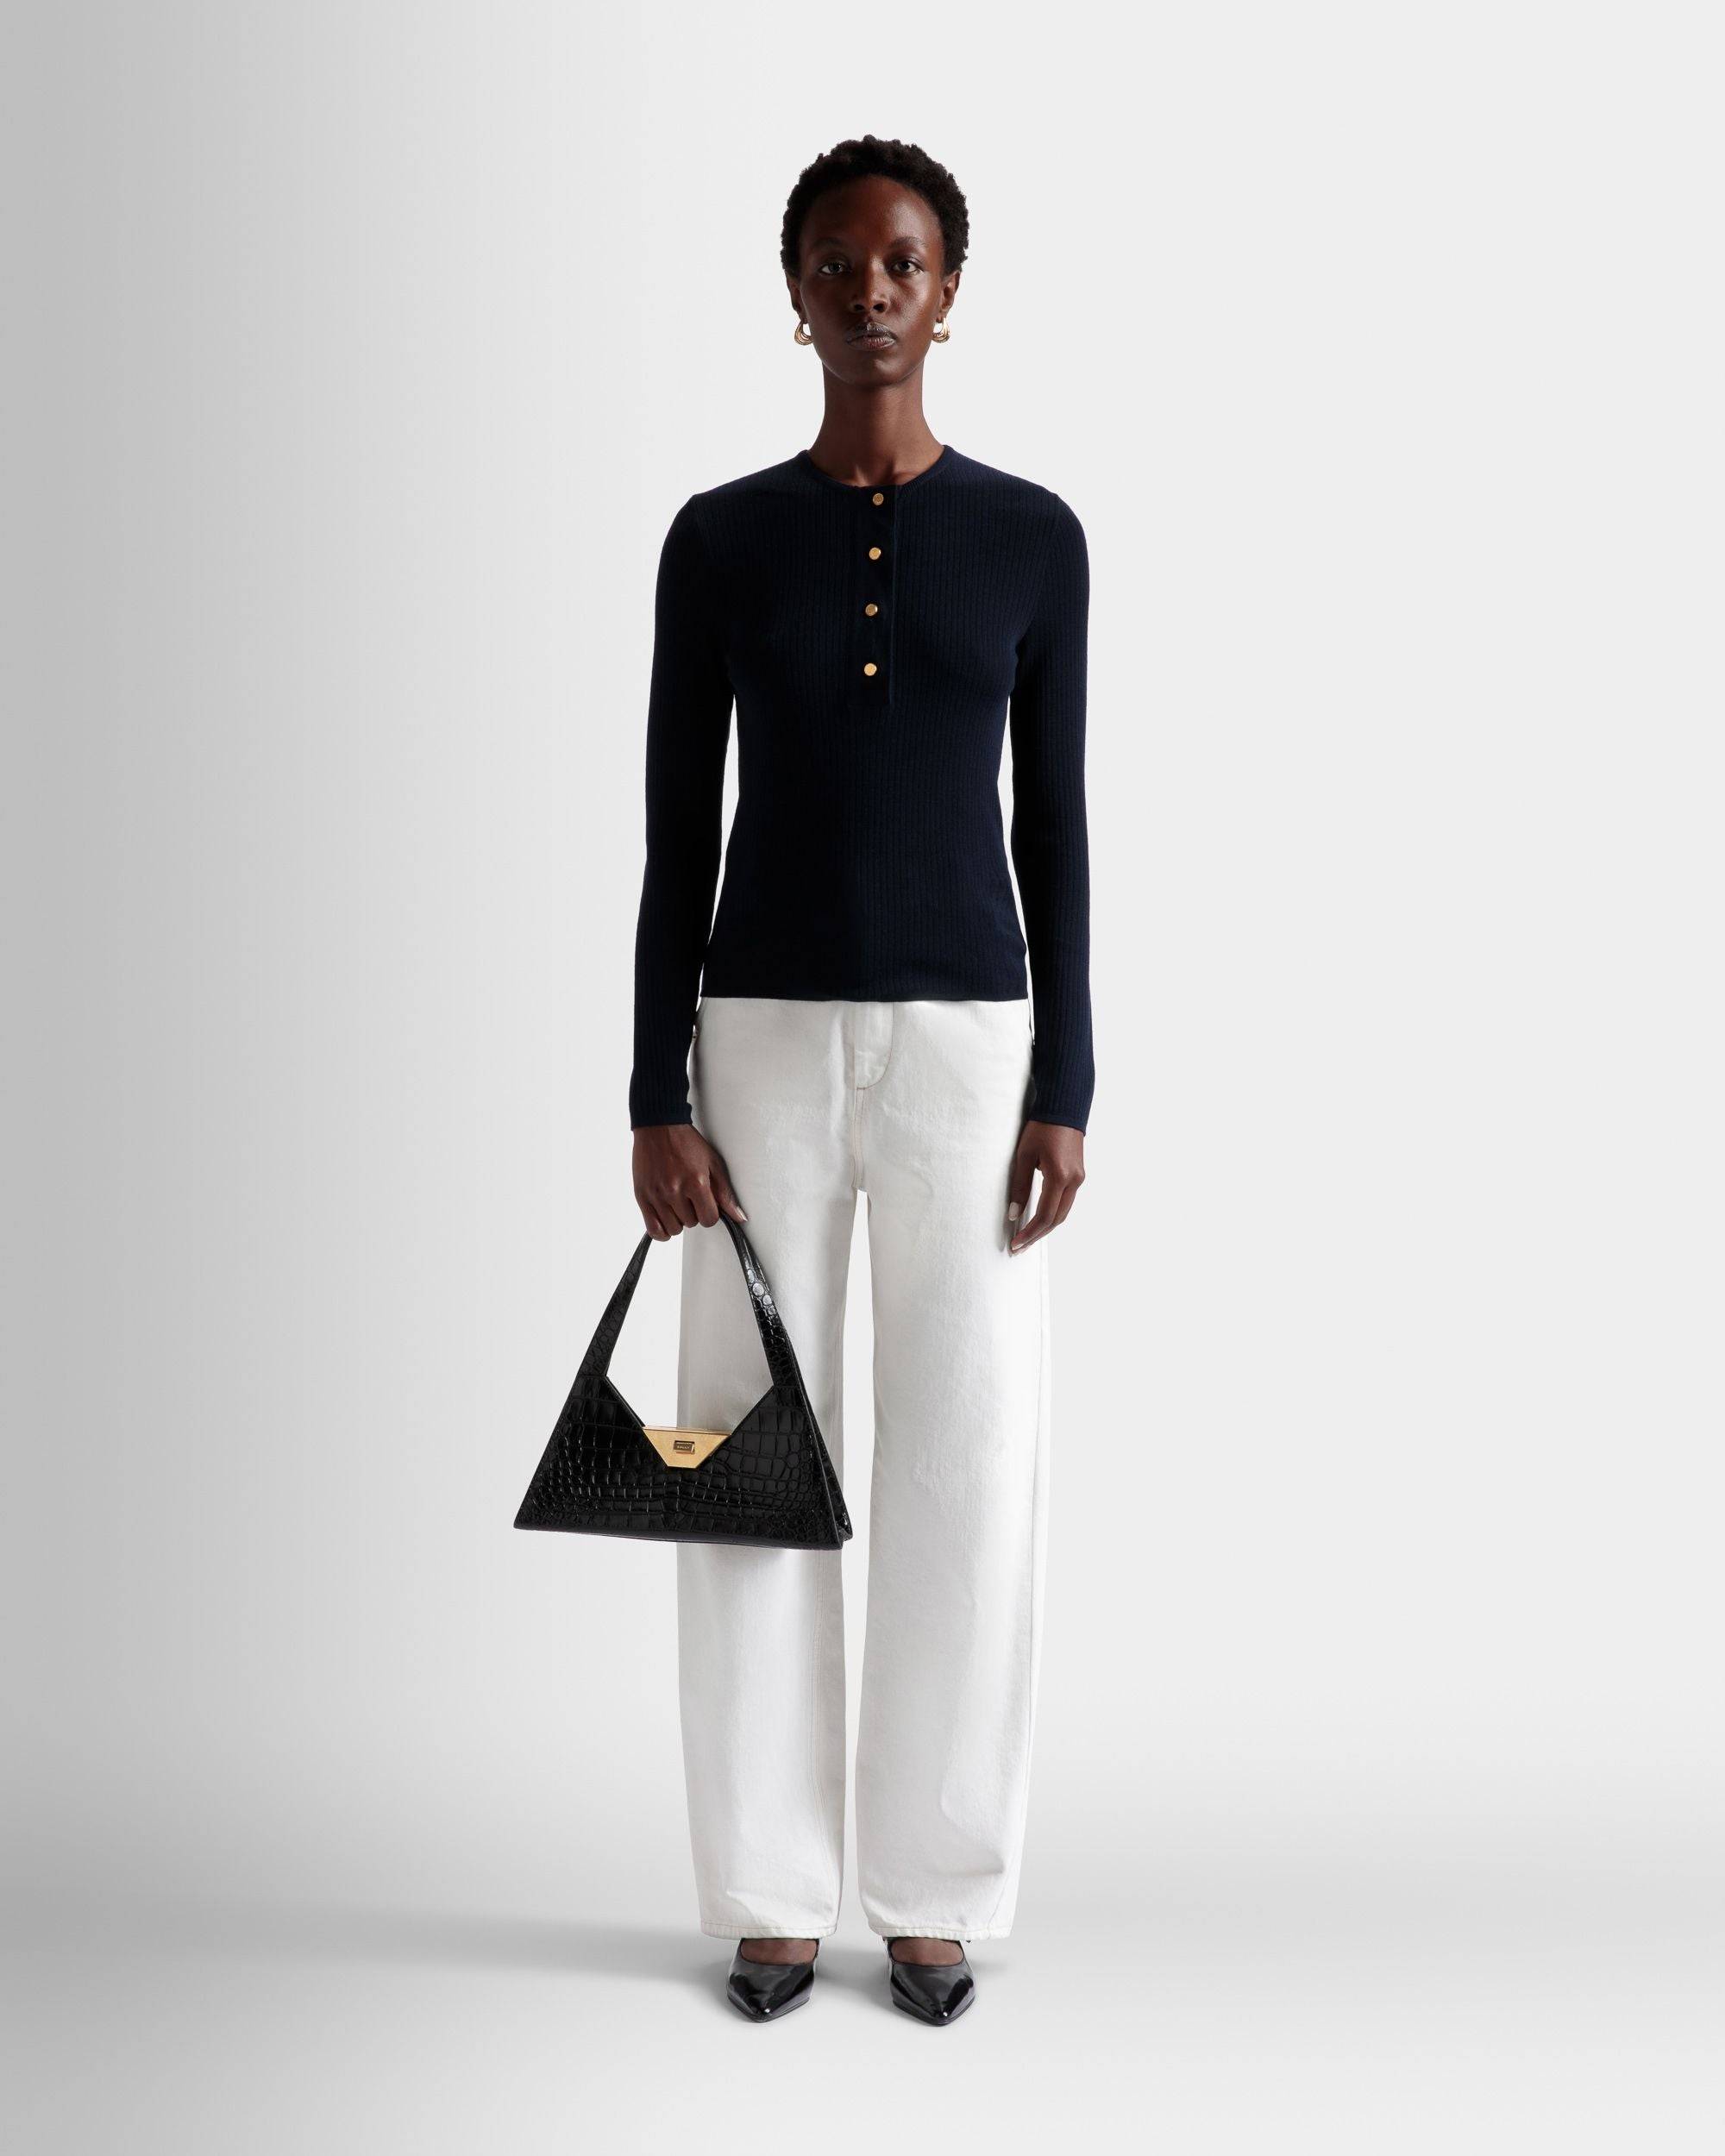 Trilliant Small Shoulder Bag | Women's Shoulder Bag | Black Leather | Bally | On Model Front